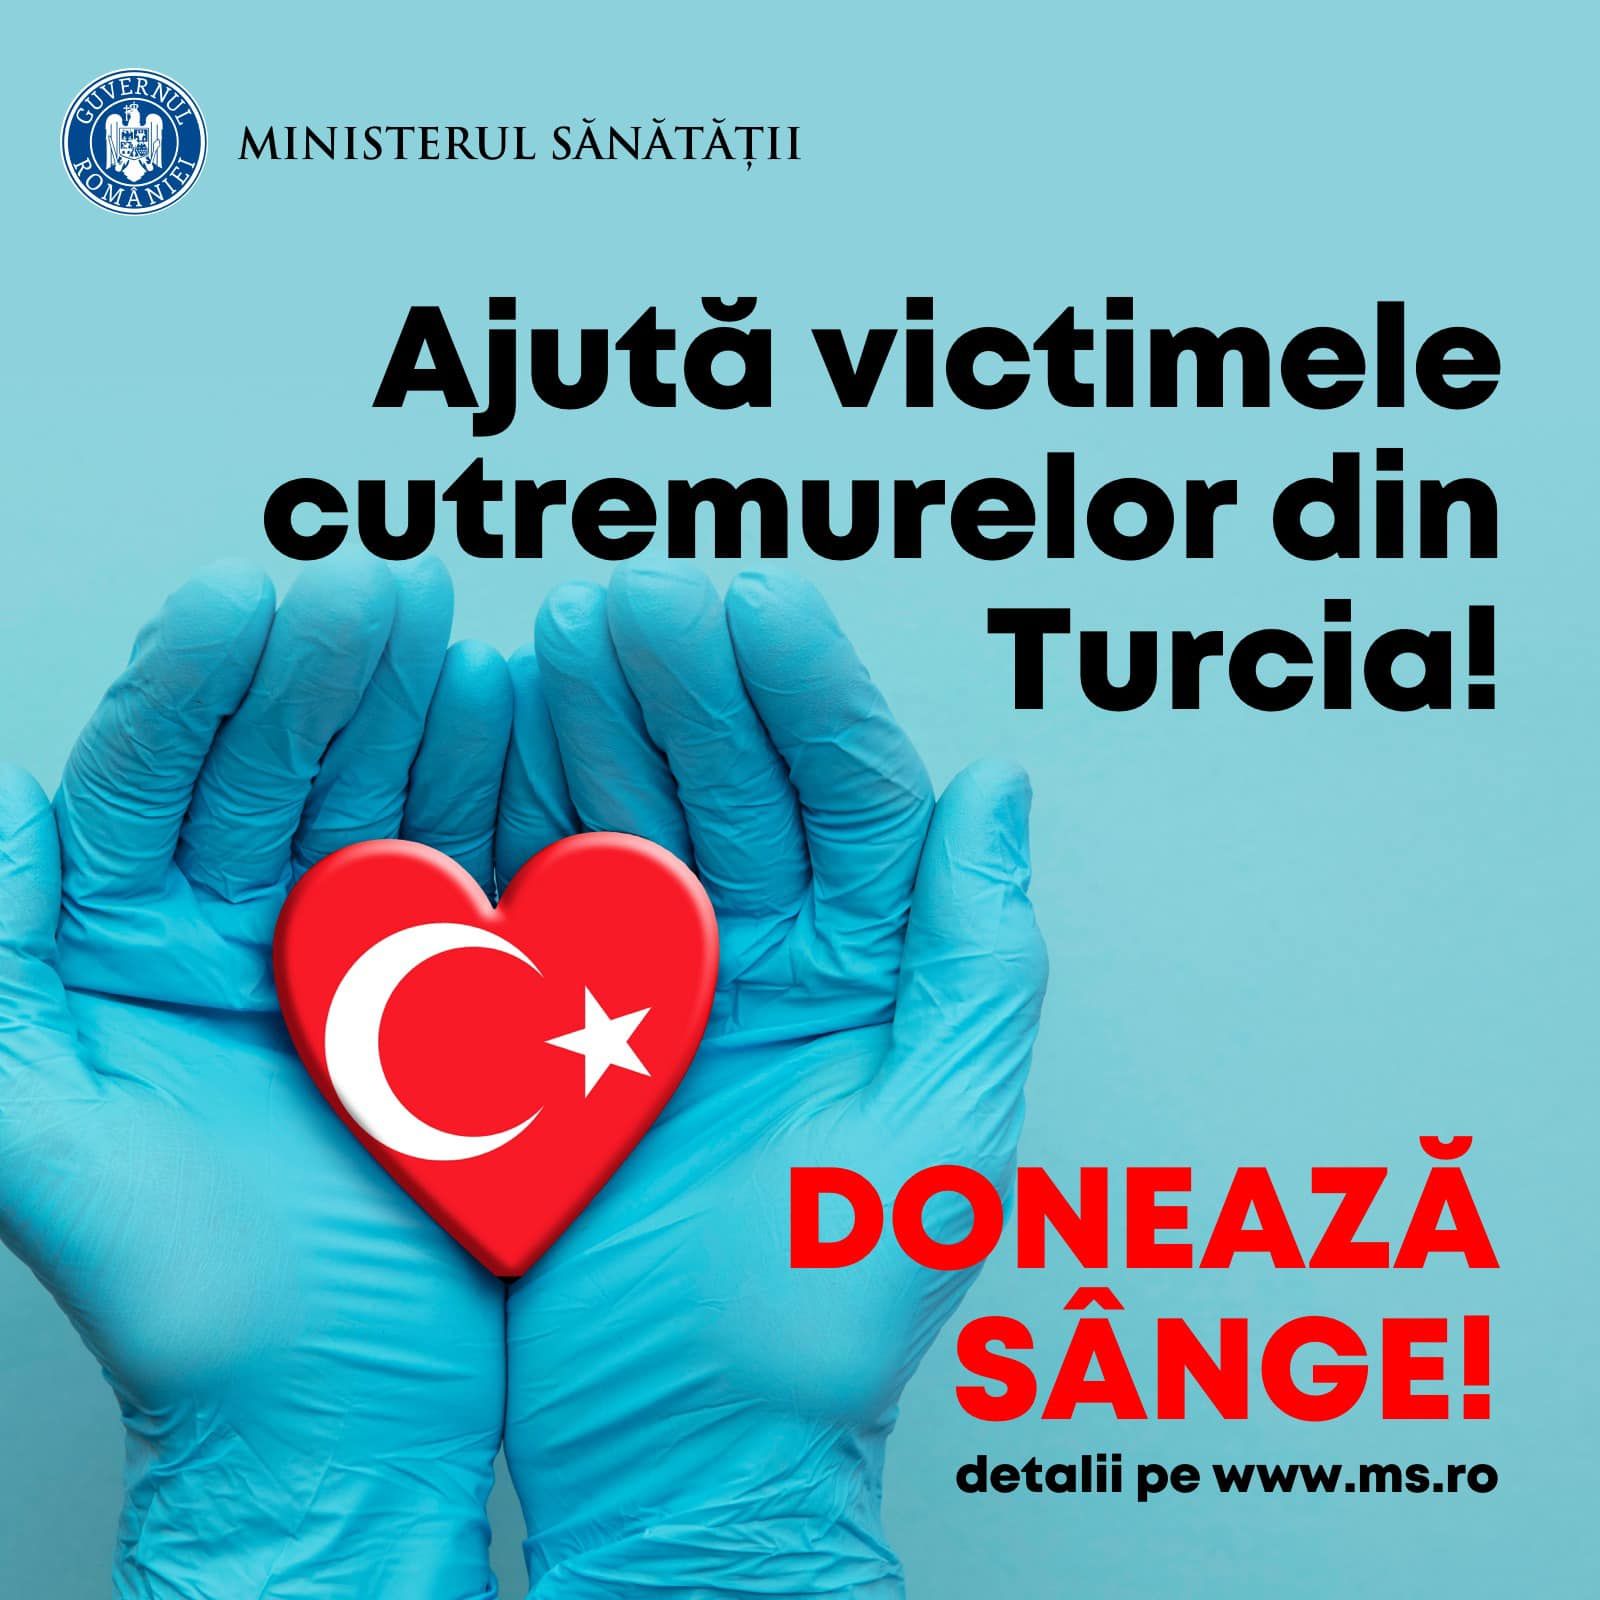 Unde puteți dona sânge pentru victimele cutremurelor din Turcia